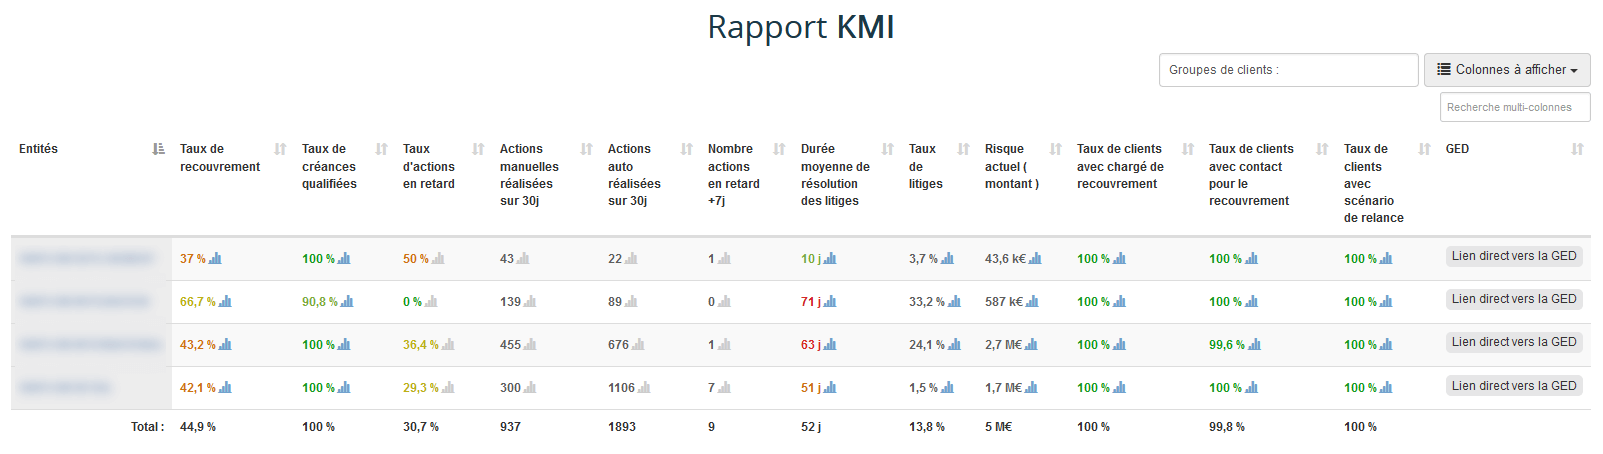 Rapport KMI